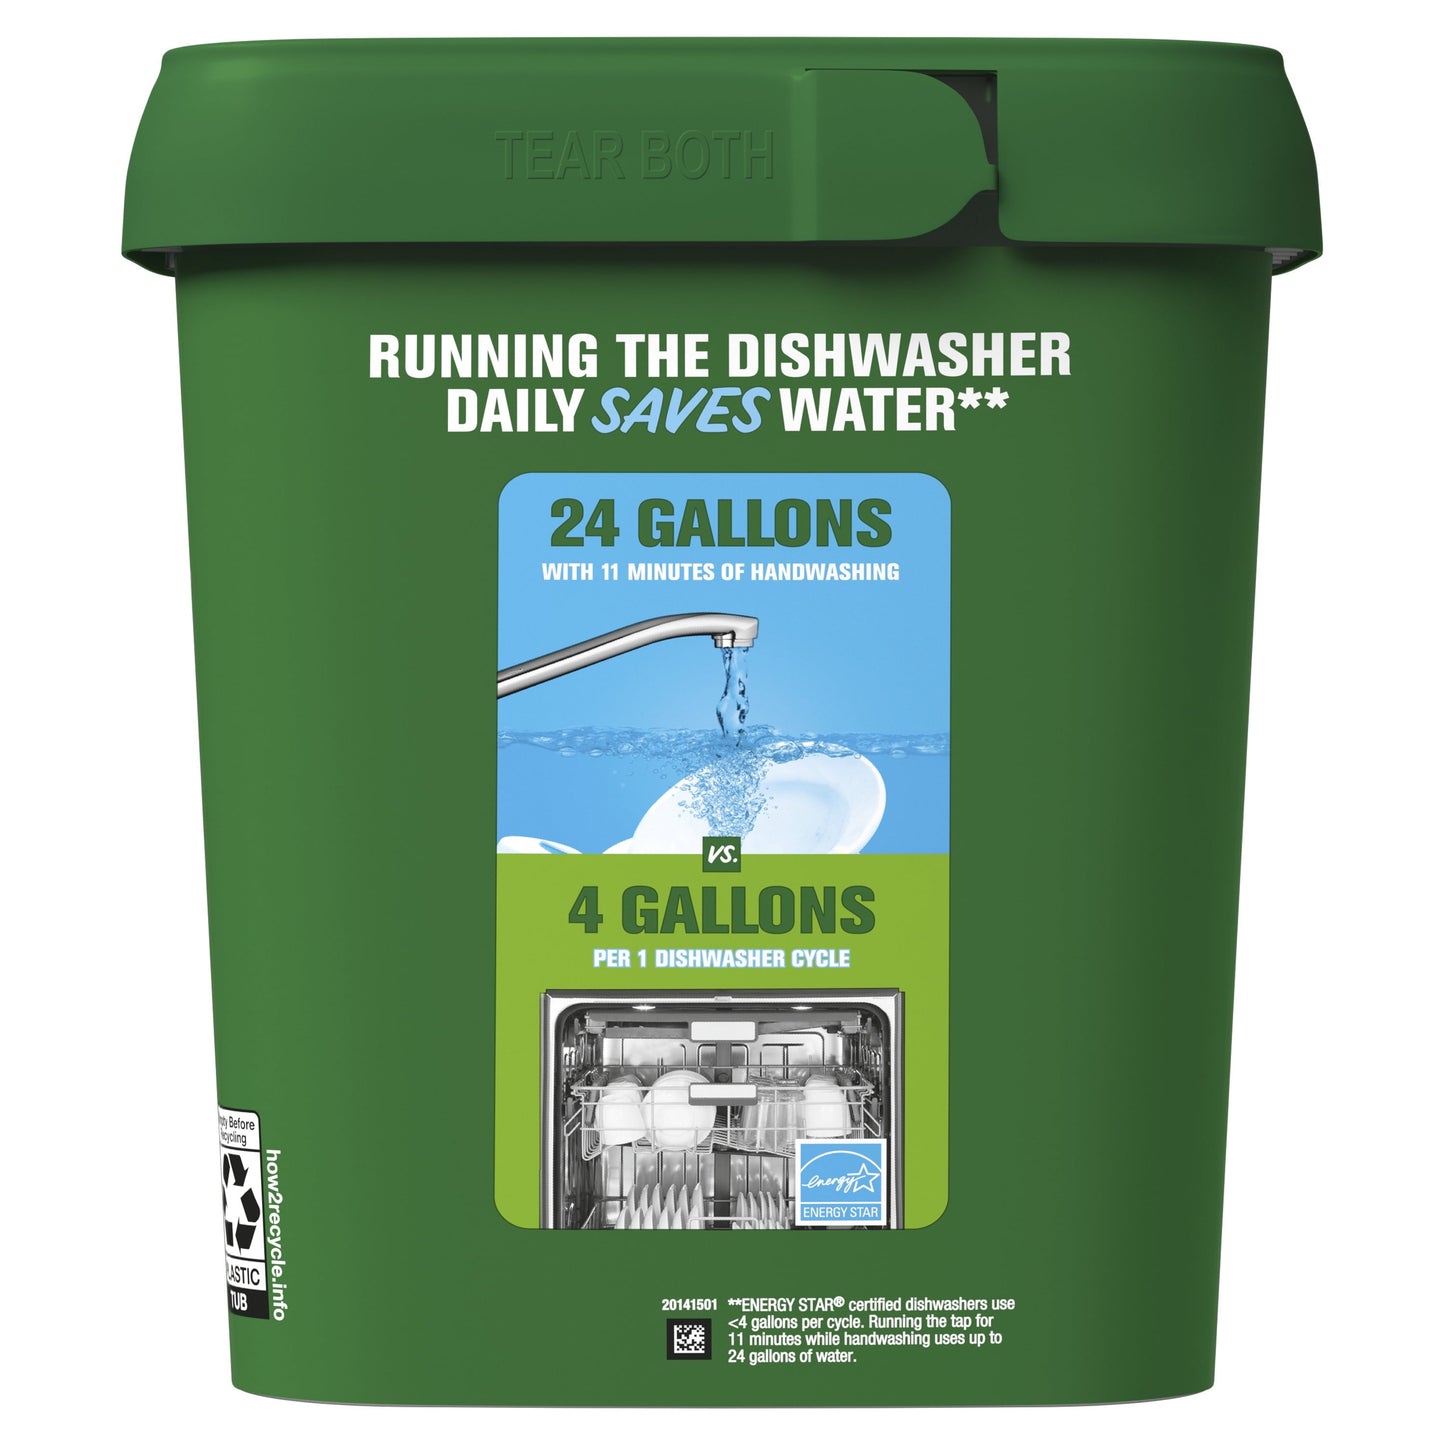 Cascade Complete Dishwasher Detergent ActionPacs, Lemon Scent, 78 Ct